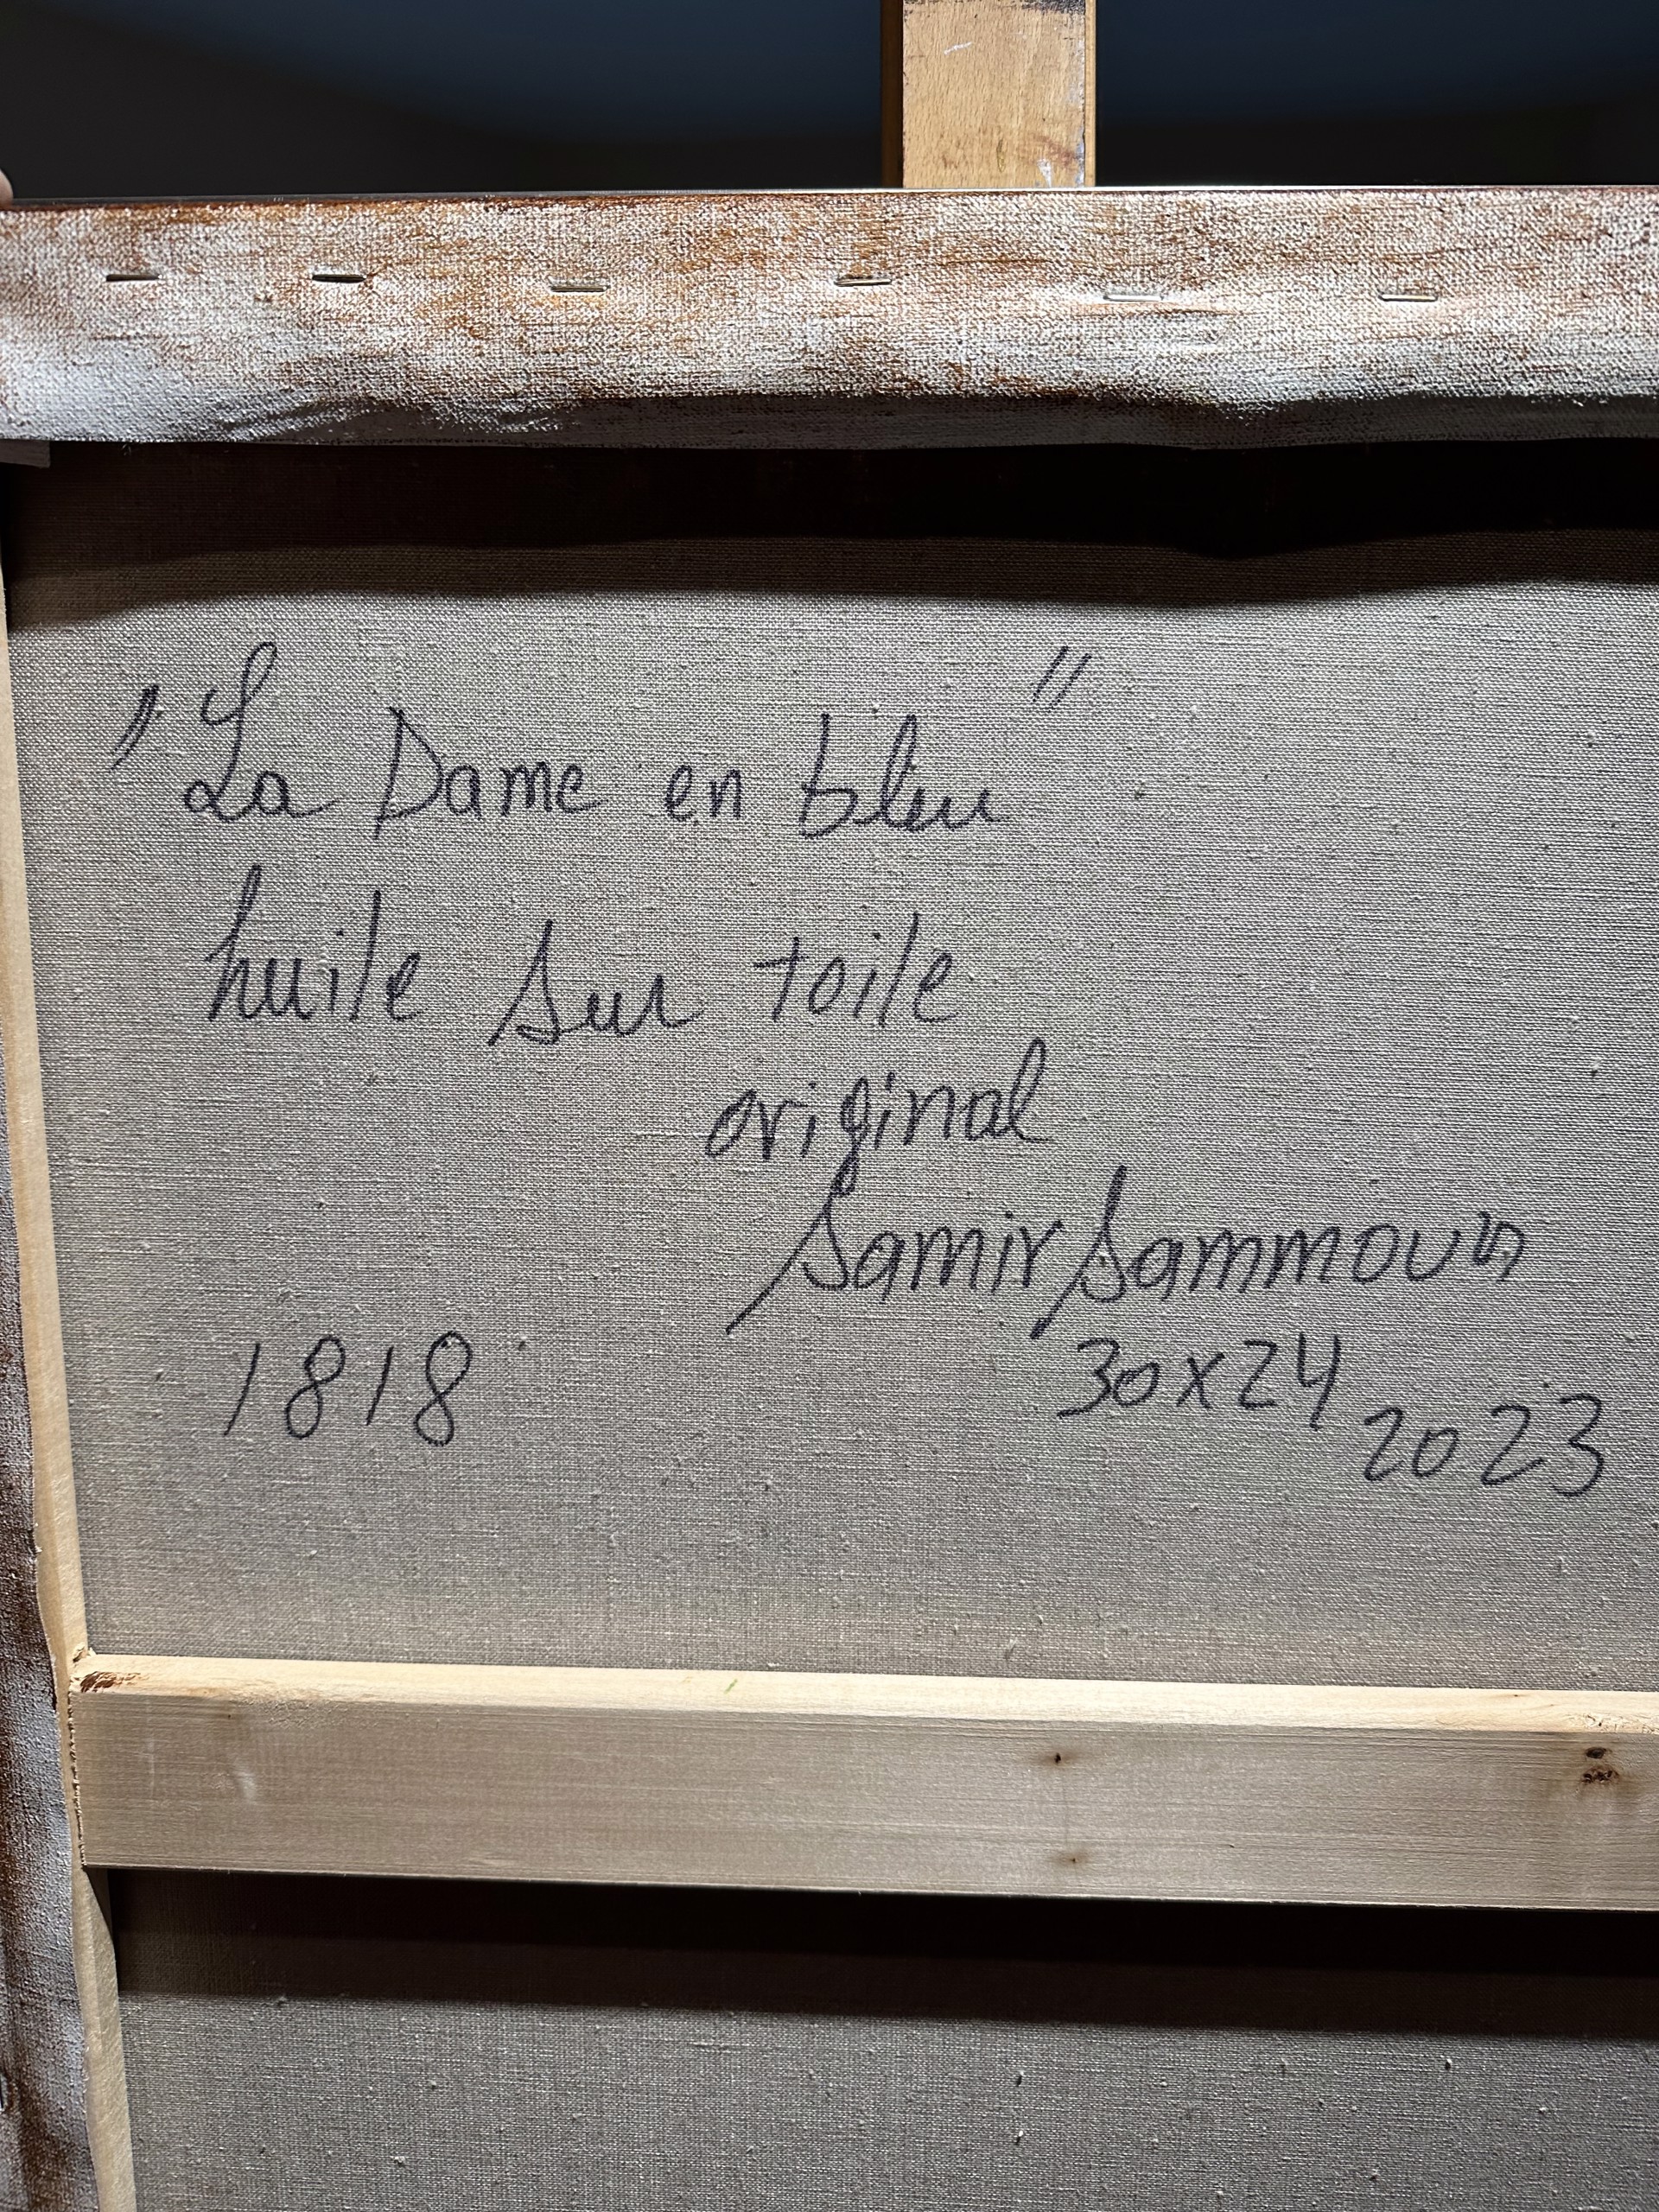 La Dame en bleu, 30x24 by Samir Sammoun